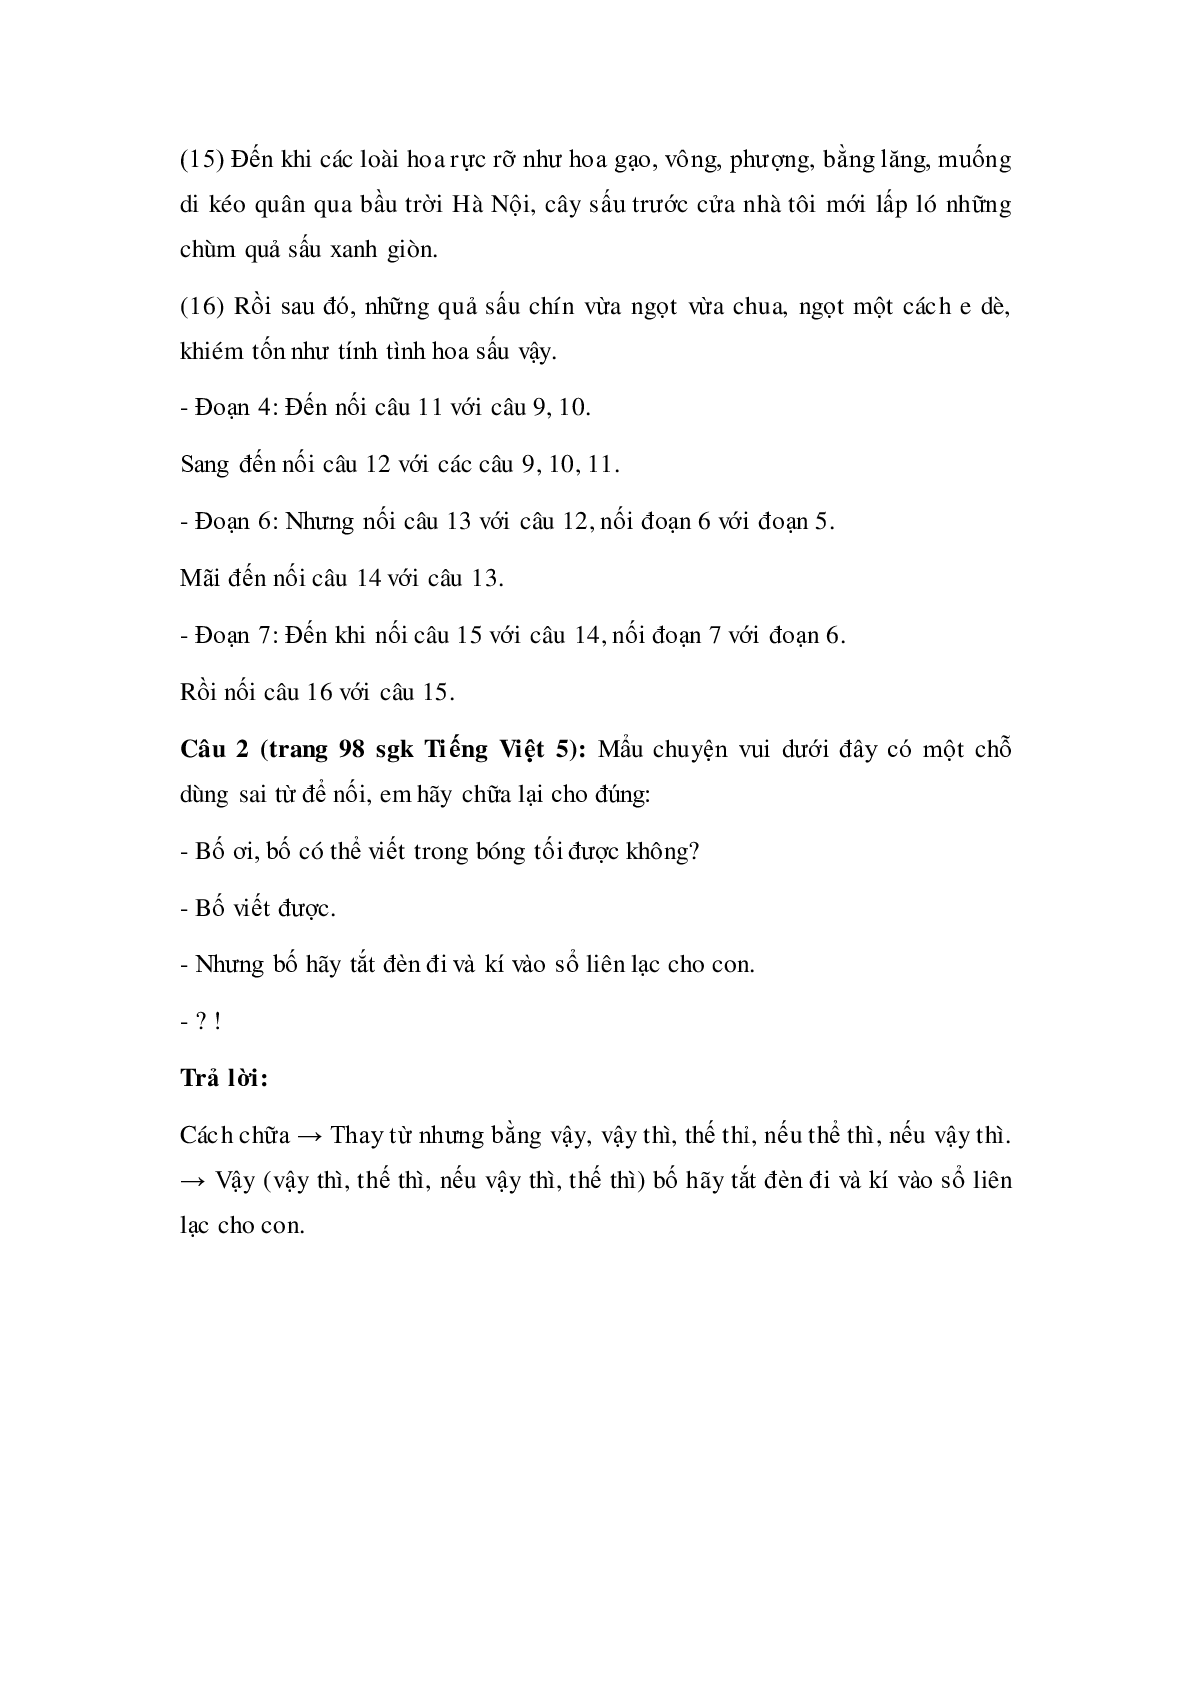 Soạn Tiếng Việt lớp 5: Luyện từ và câu: Liên kết các câu trong bài bằng từ ngữ nối mới nhất (trang 4)